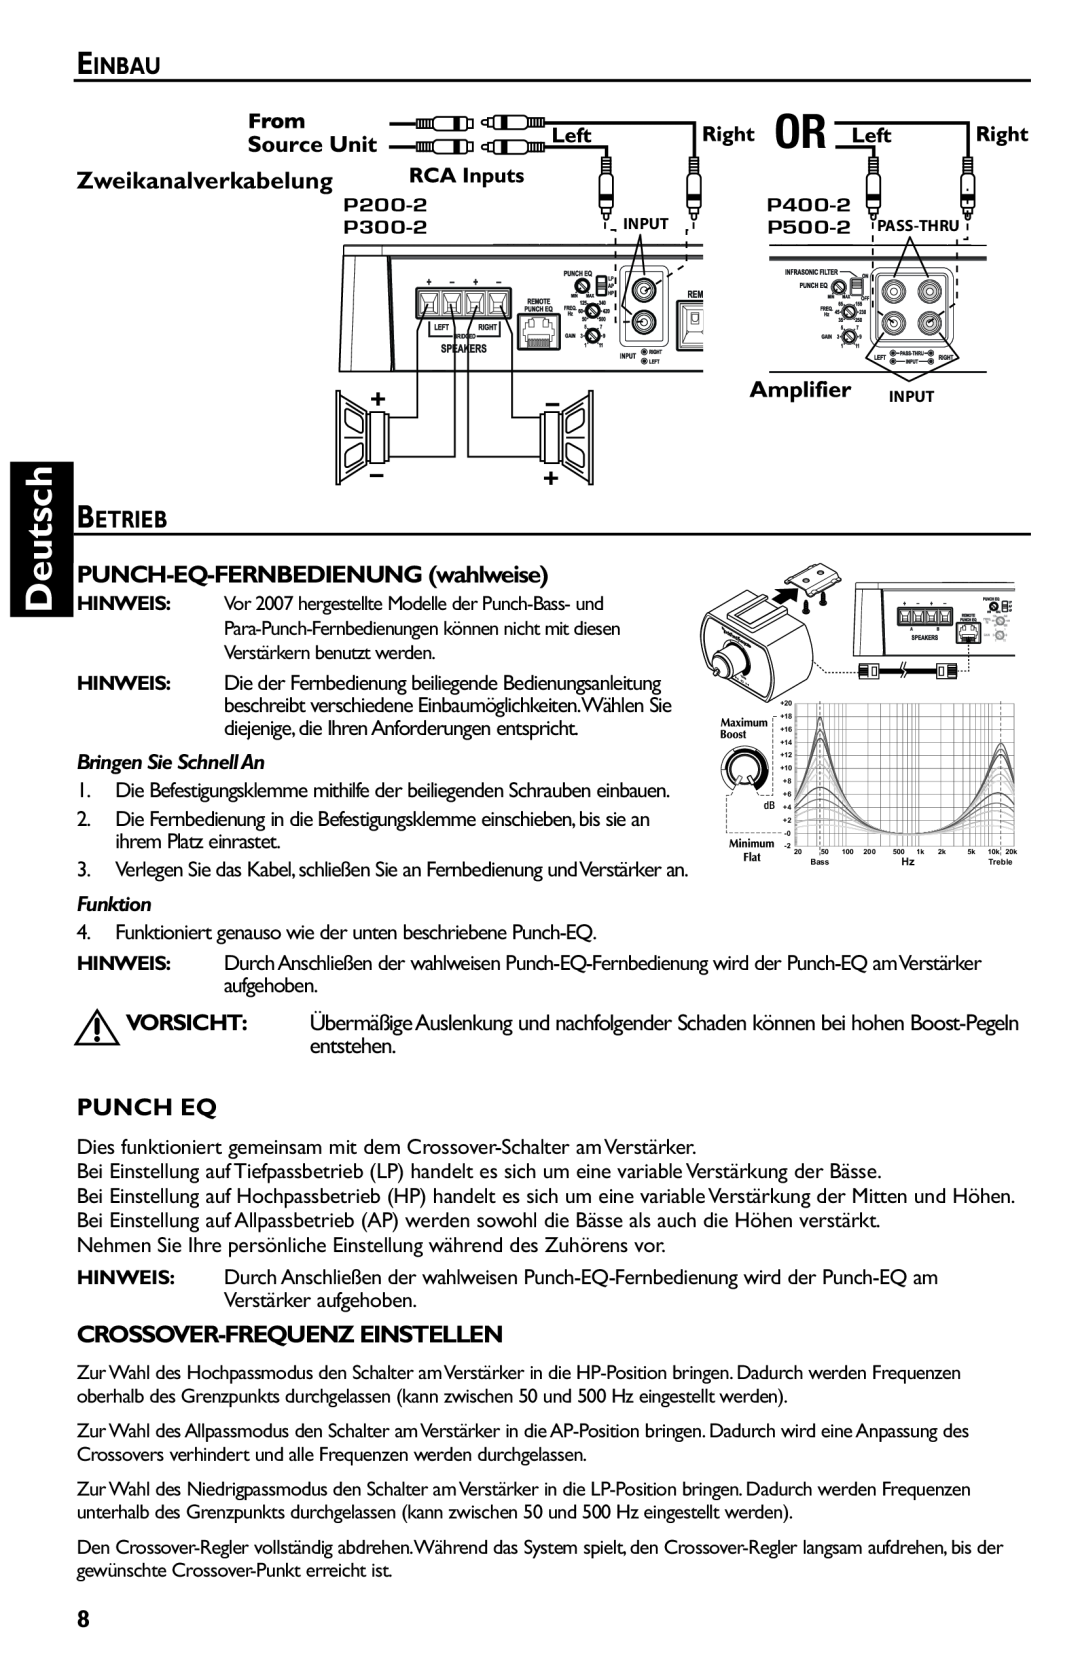 Rockford Fosgate p3002 manual Deutsch, Einbau, Zweikanalverkabelung, PUNCH-EQ-FERNBEDIENUNGwahlweise, Punch Eq, Funktion 